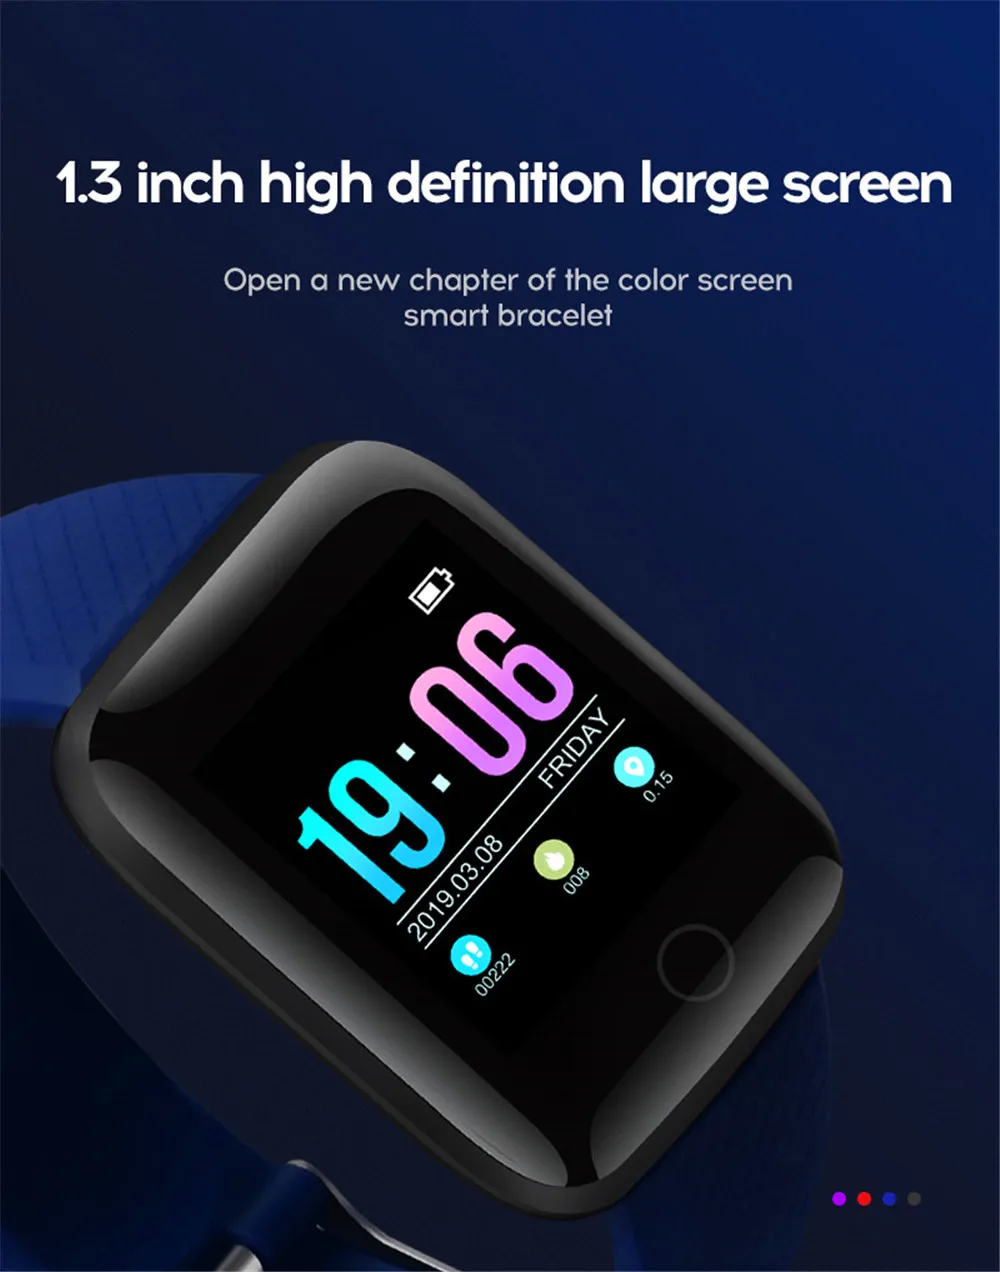 Спортивные D13 Смарт-часы мужские \ женские пульсометр кровяное давление фитнес-трекер умные часы для IOS Android